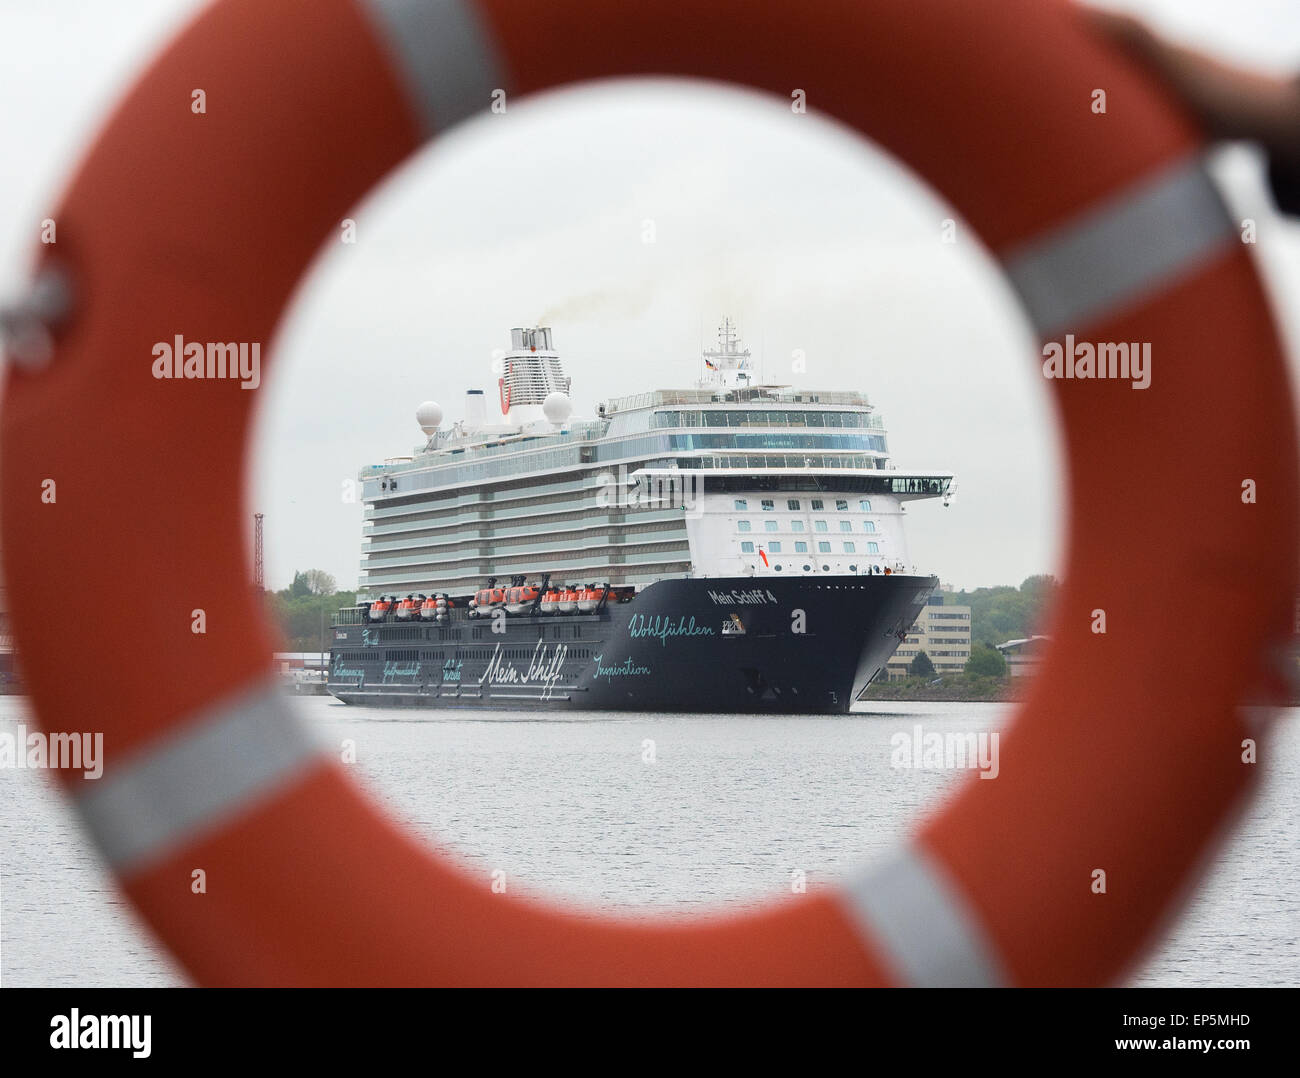 Kiel, Allemagne. 14 mai, 2015. Le bateau de croisière 'Mein Schiff 4' (Mon bateau 4) des approches du port de Kiel, Allemagne, 14 mai 2015. C'est la première fois que le paquebot de croisière à quai dans un port allemand. Le navire doit être baptisé le 05 juin 2015 dans le port de Kiel. Photo : DANIEL BOCKWOLDT/dpa/Alamy Live News Banque D'Images